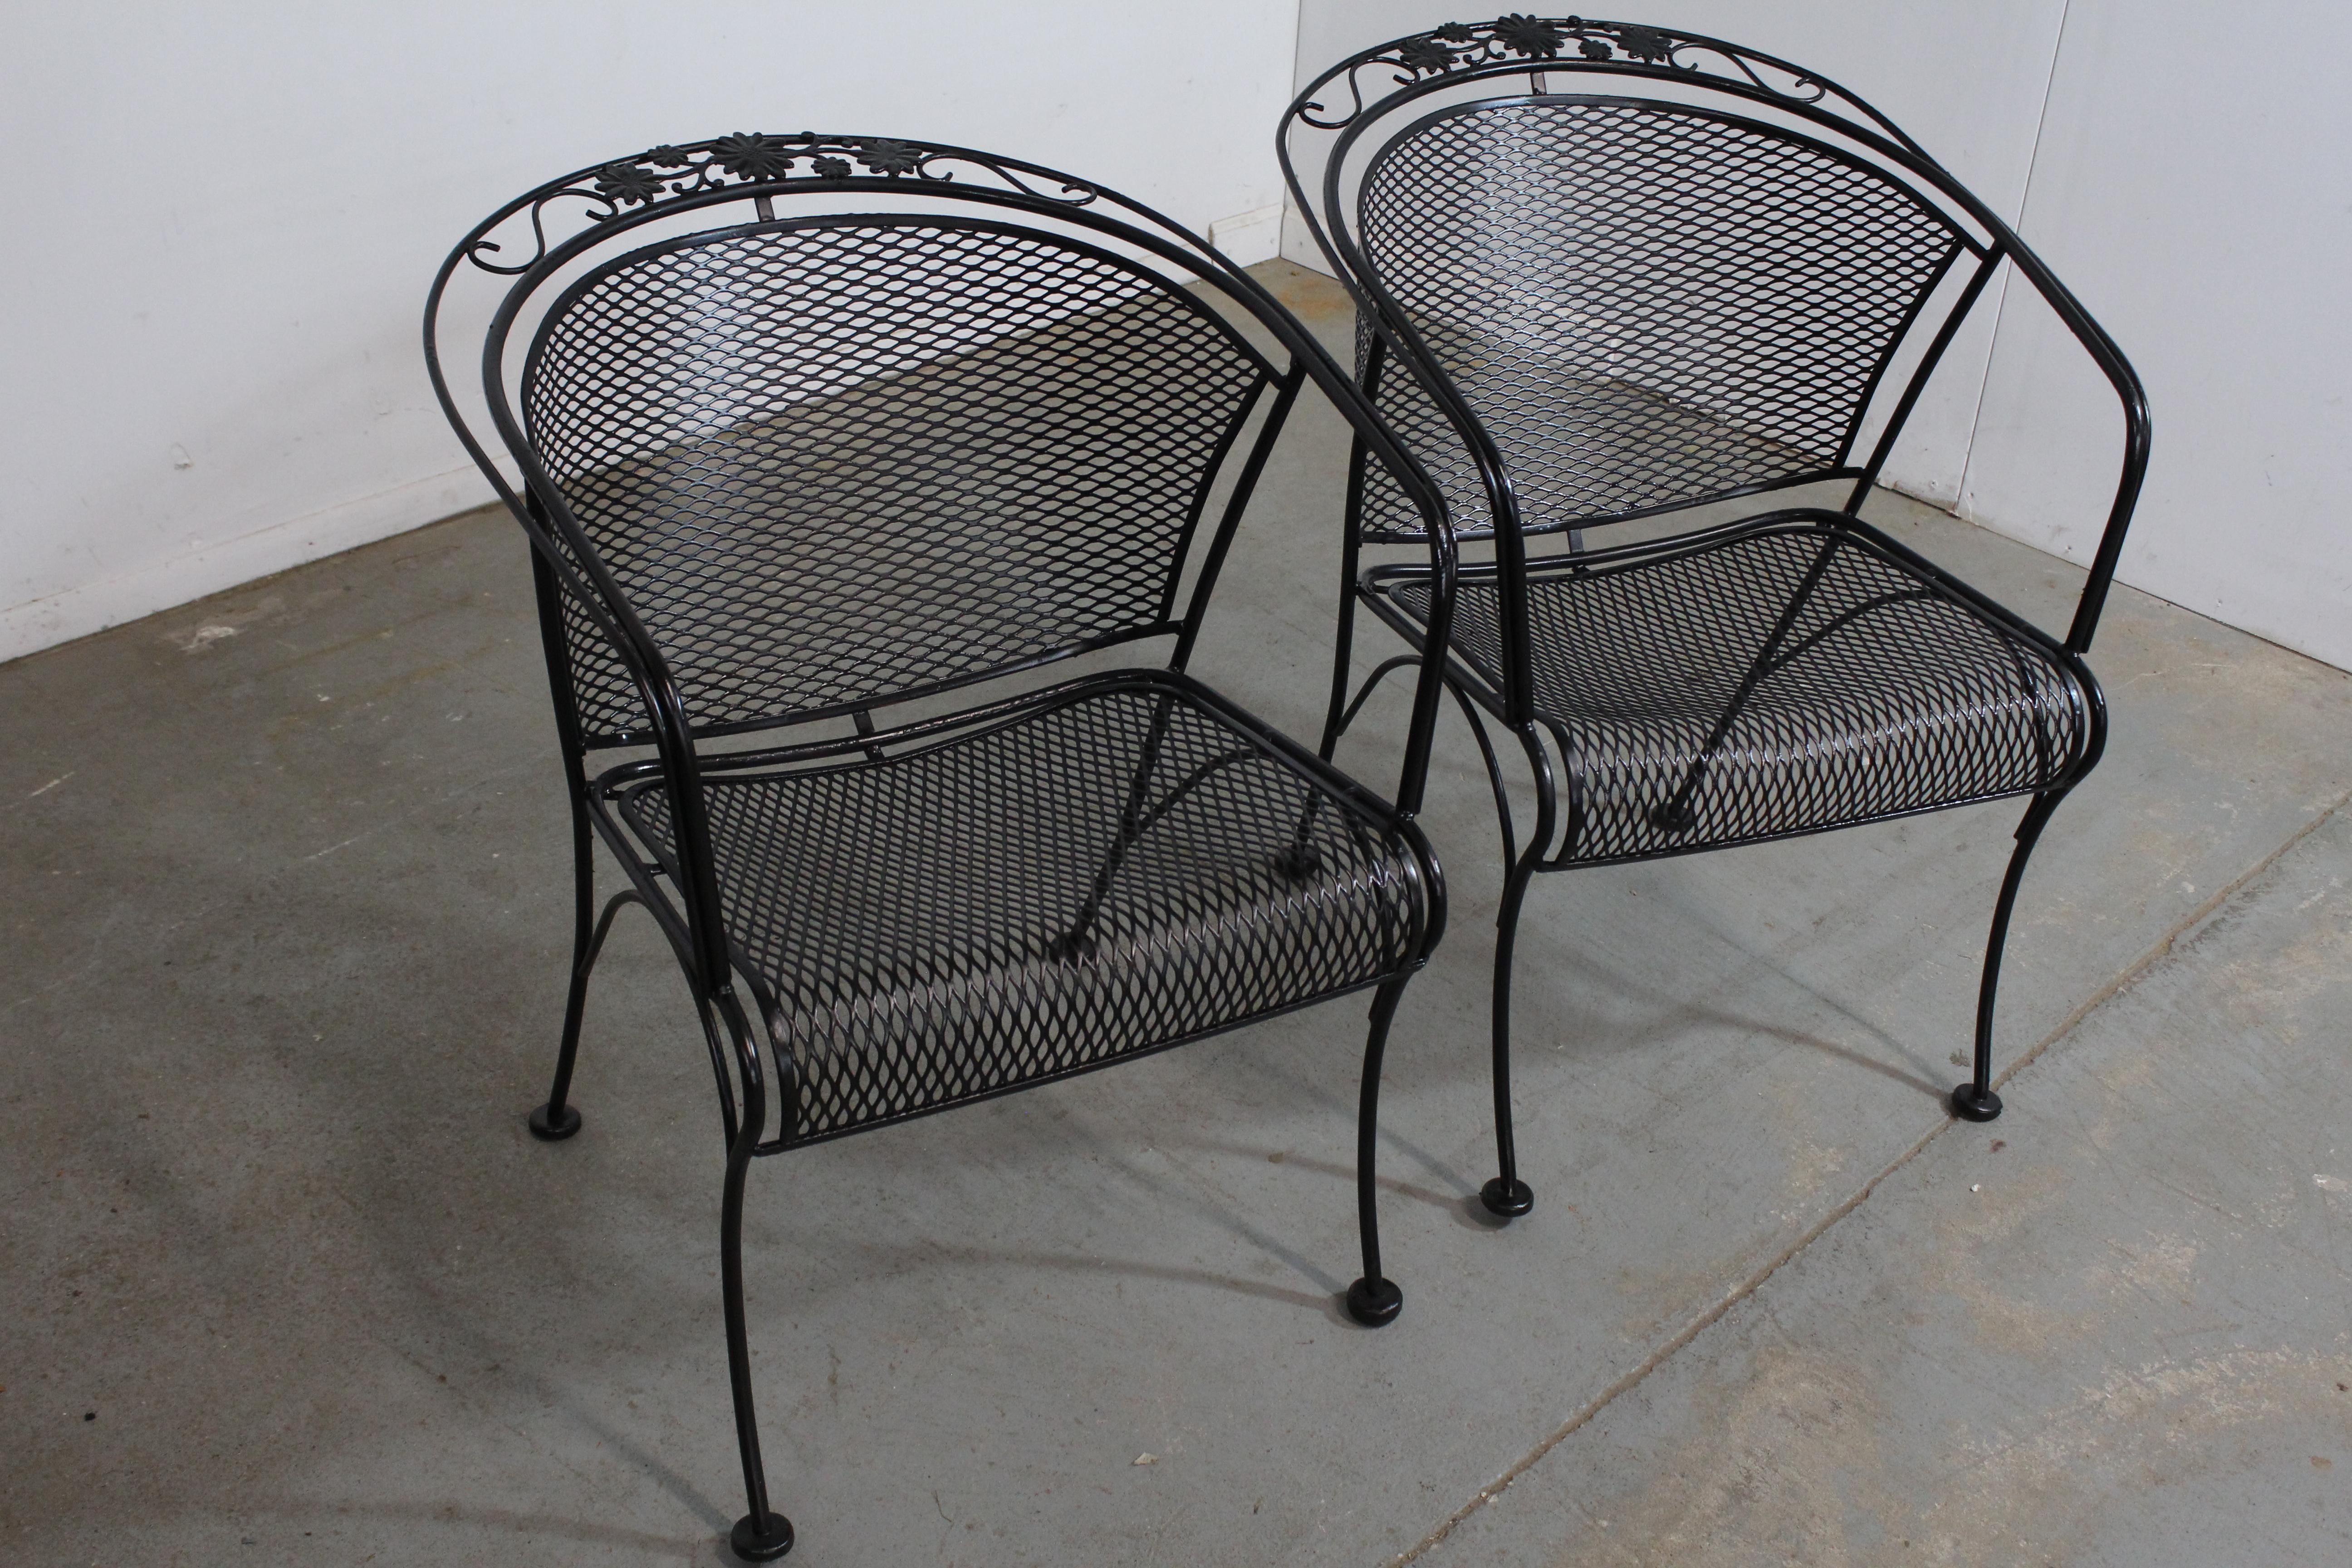 Ensemble de 2 fauteuils d'extérieur à dossier incurvé de style Mid-Century Modern Salterini.
Nous vous proposons un ensemble de 2 fauteuils d'extérieur de style Salterini (circa 1960). Caractéristiques Peinture noire et fer forgé tissé avec un